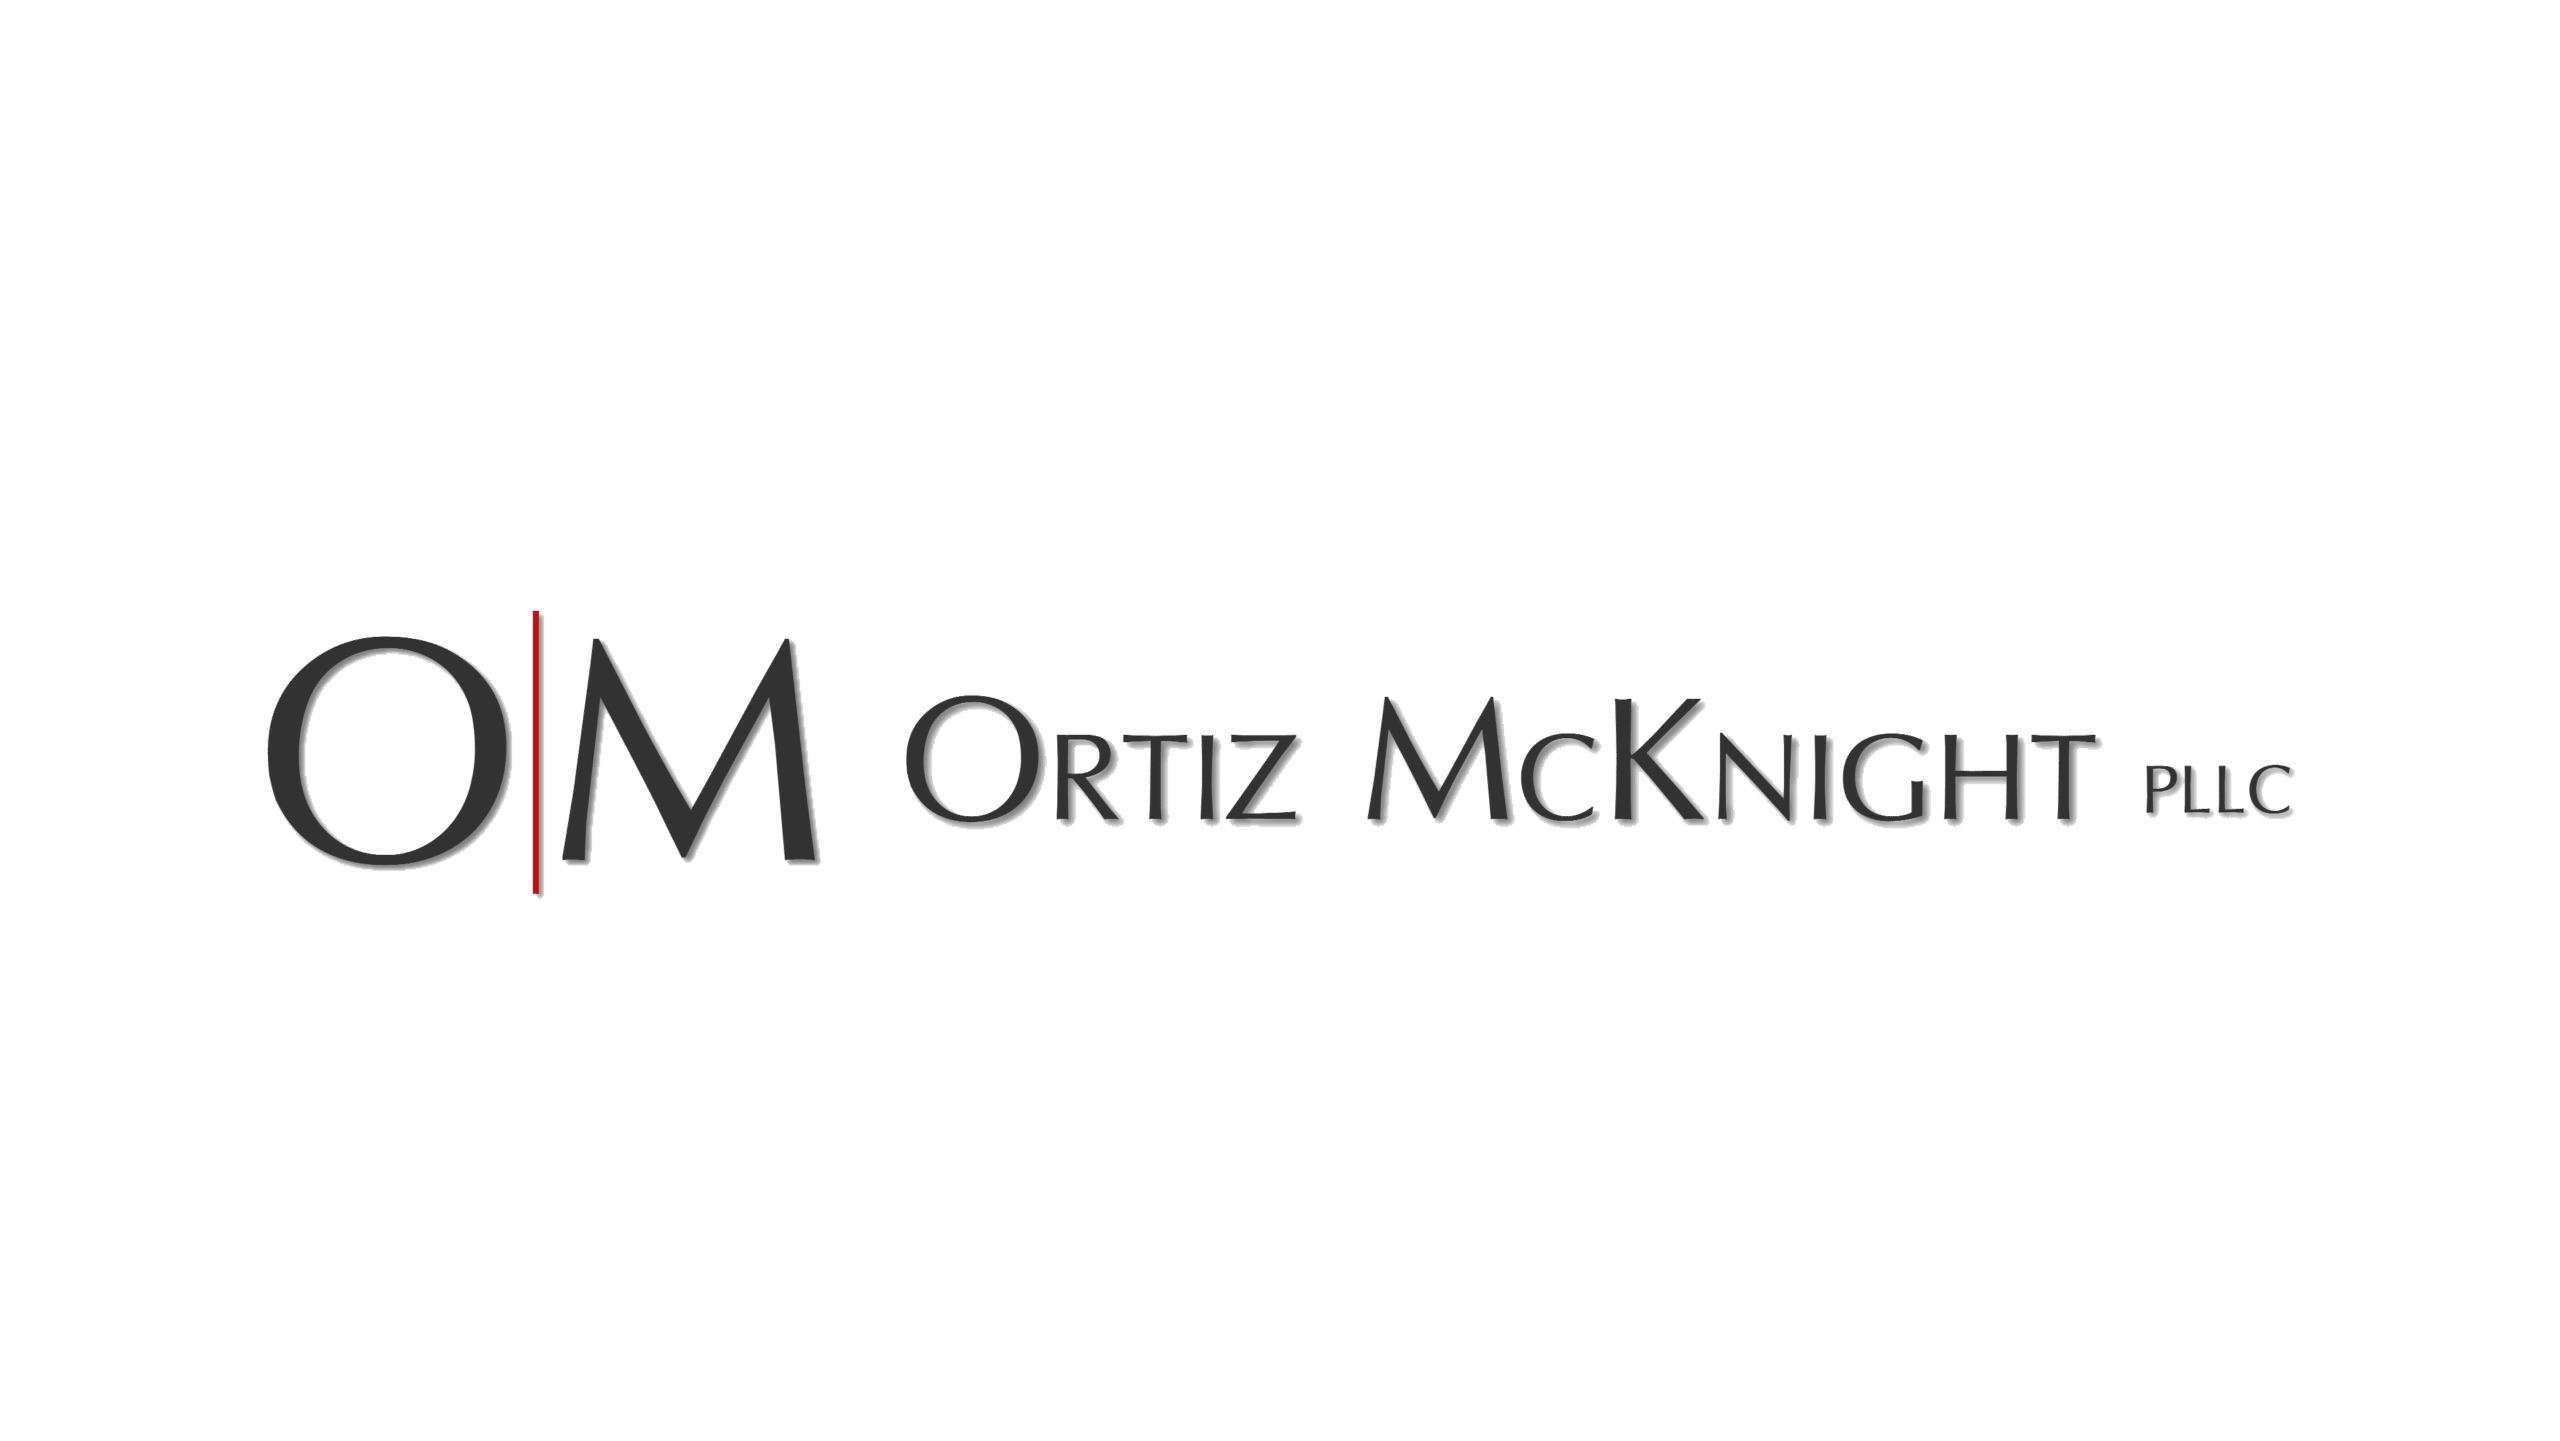 Ortiz McKnight logo without background